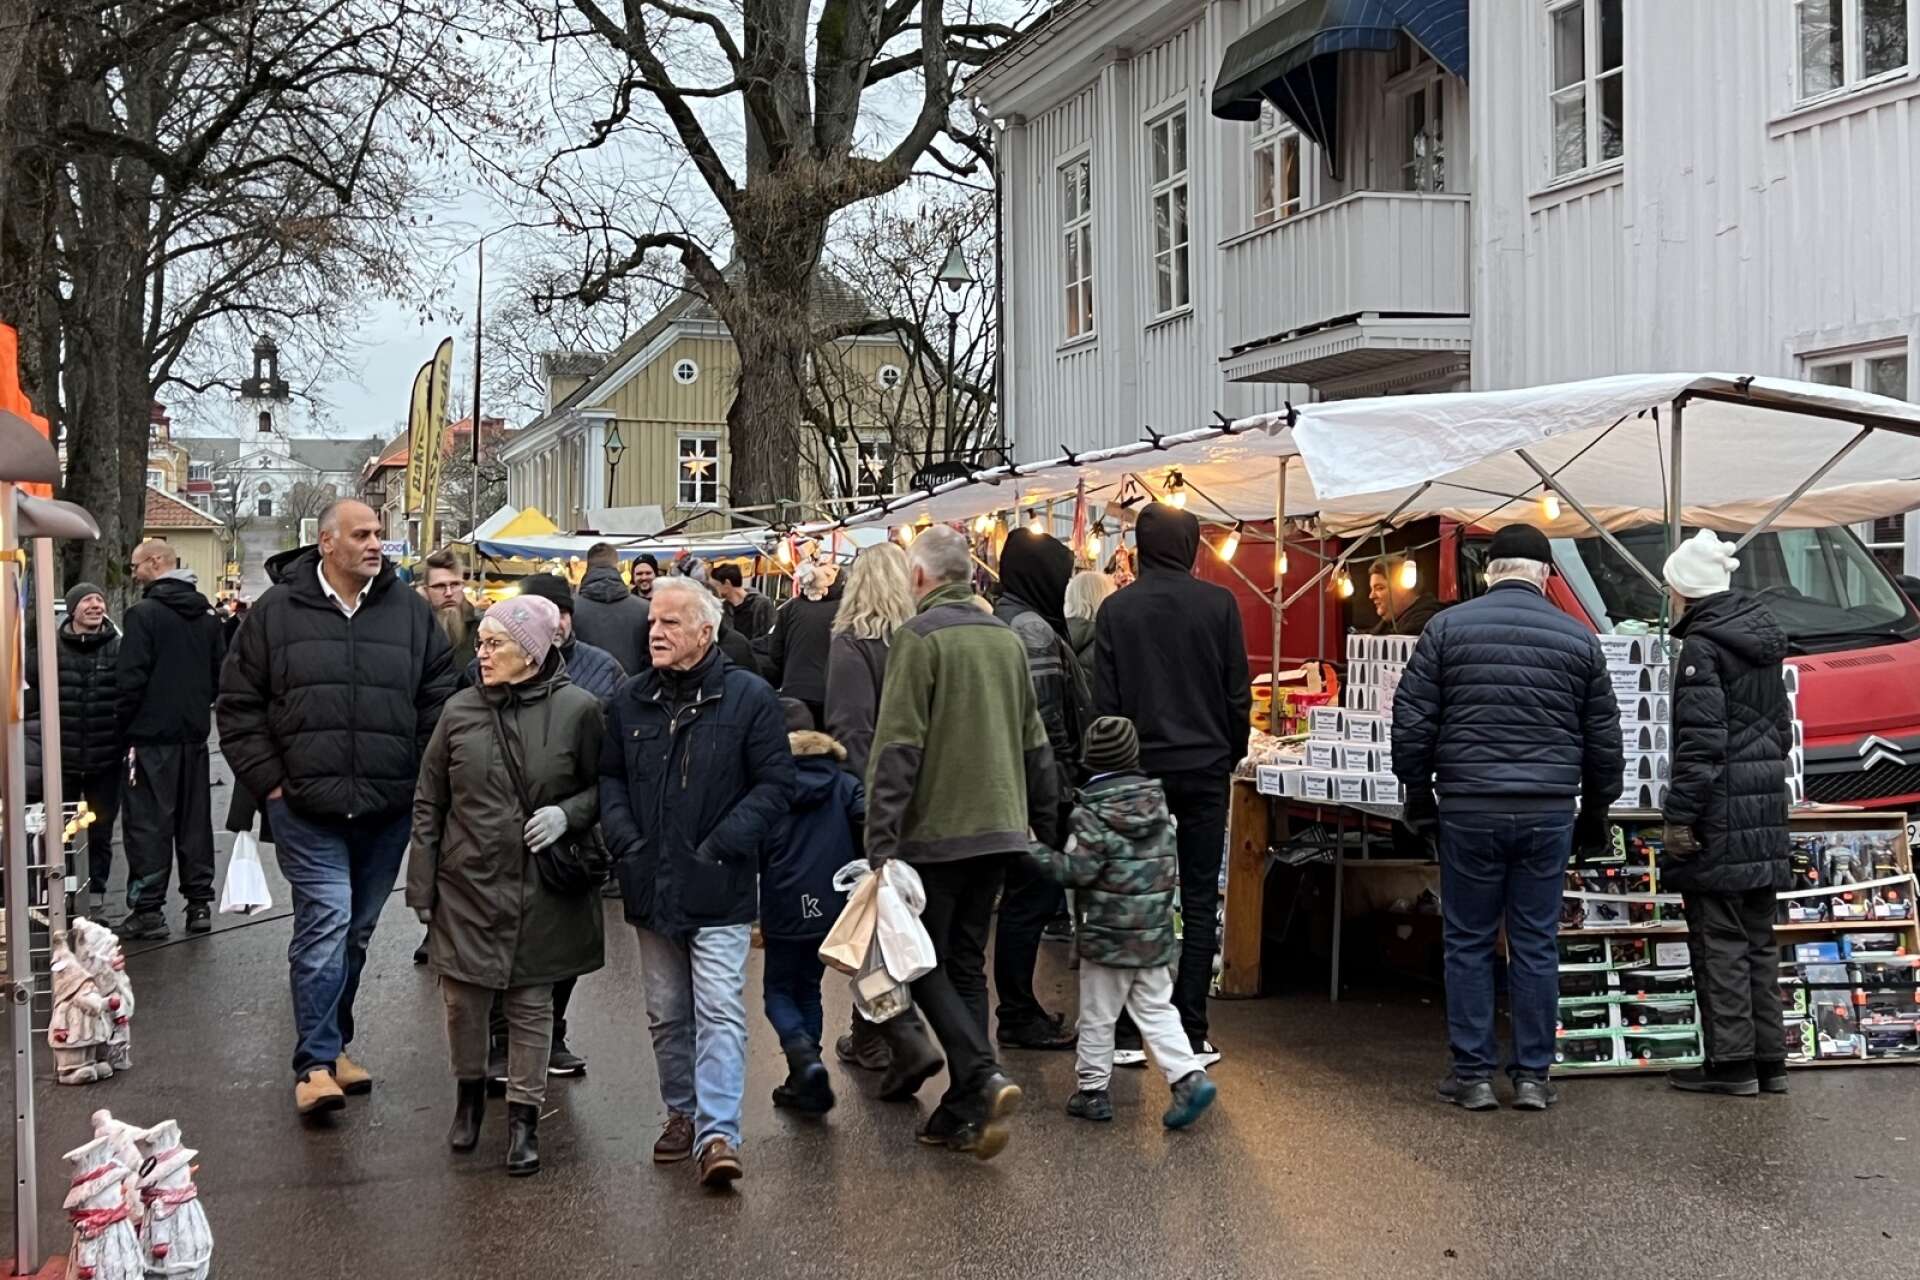 Julmarknaden växte så det knakade och tusentals besökare lockades ut på Åmåls gator. Det var ett lyckat drag för julstämningen att förlägga flera av marknadsgatorna till Åmåls äldsta kvarter.